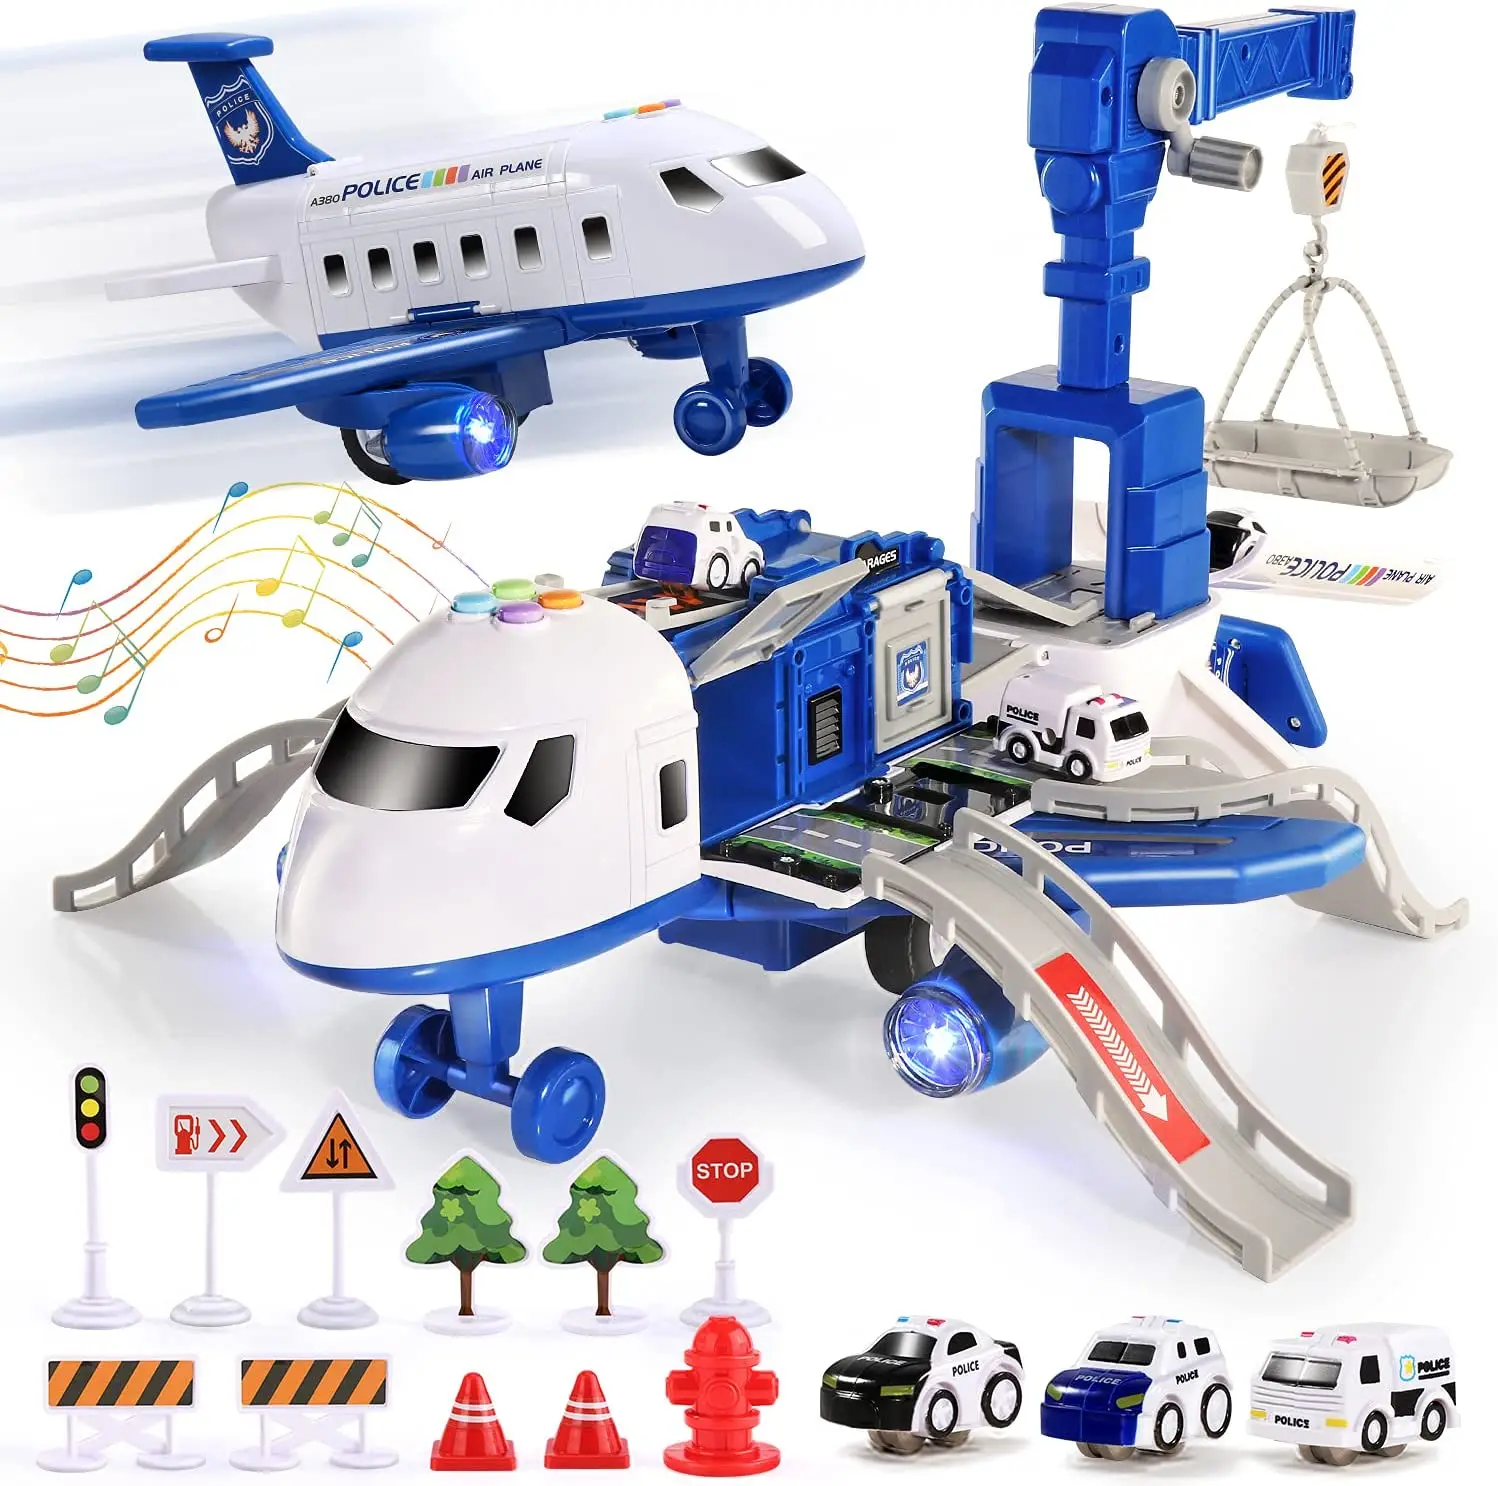 

Детский самолет с инерционным механизмом, игрушечный летательный аппарат со светом, пассажирский самолет с музыкой, литой, развивающая игрушка для детей